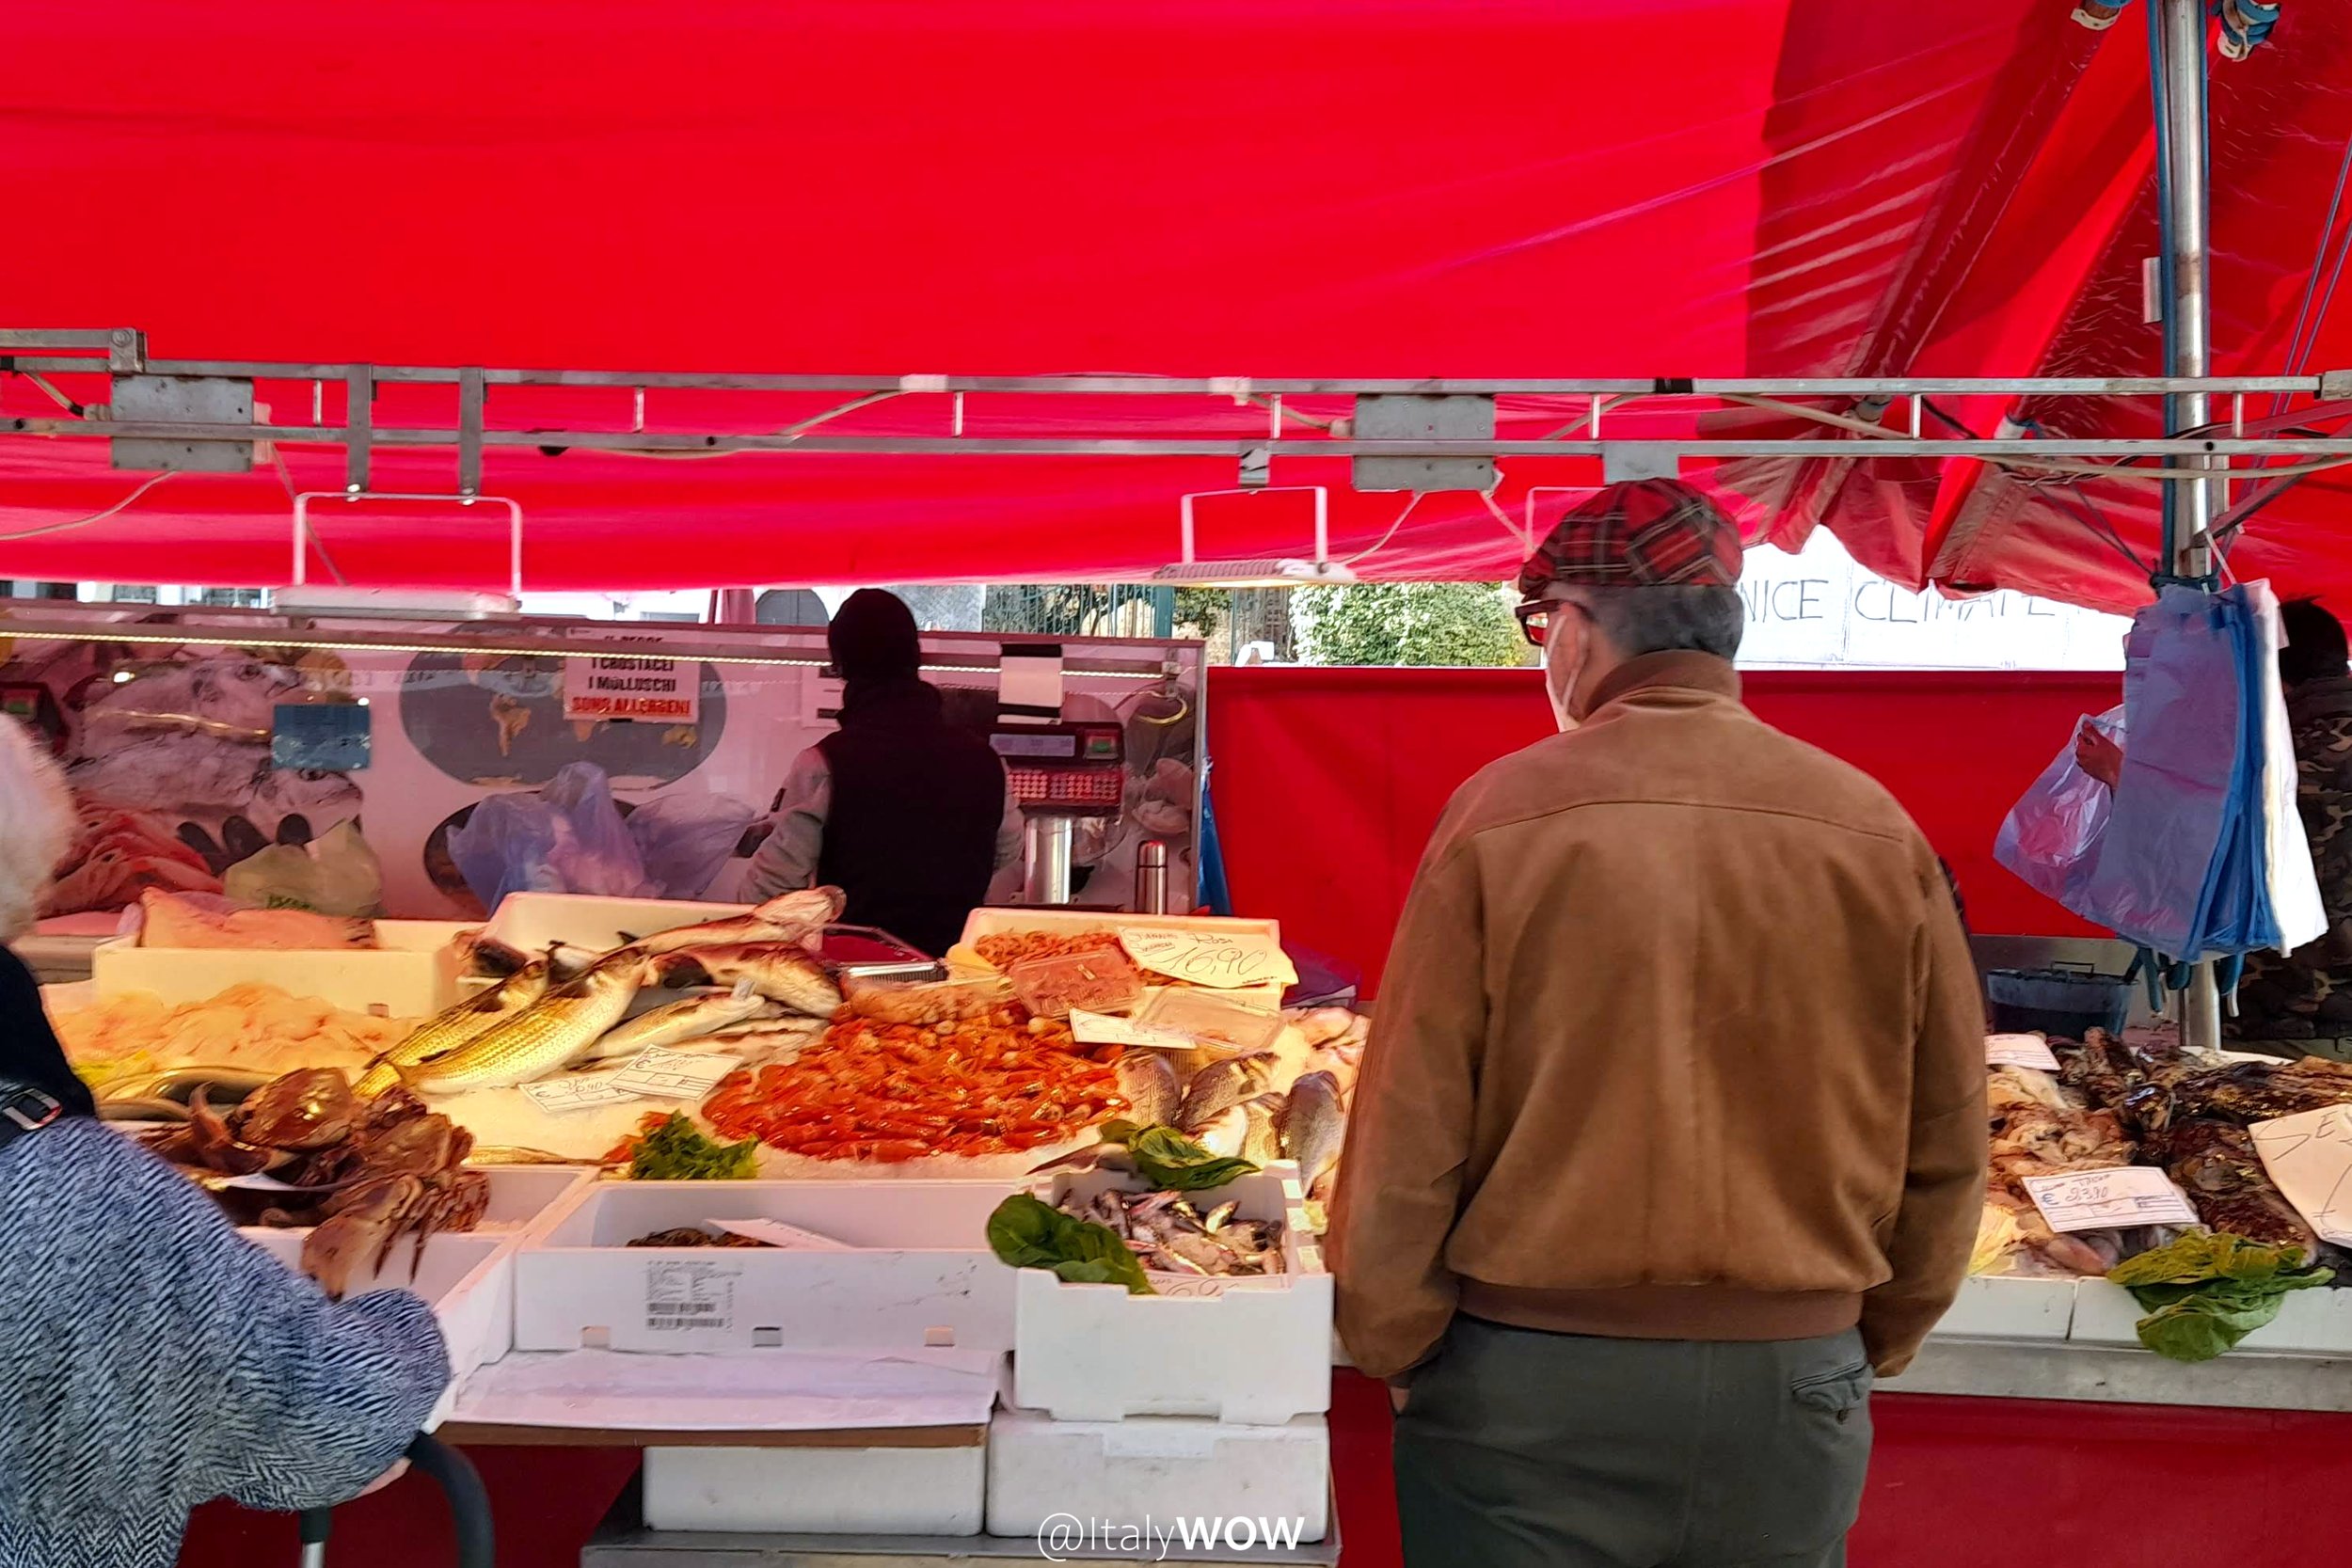 venezia-tour-3t-wow-experience-mercato-pesce.jpg